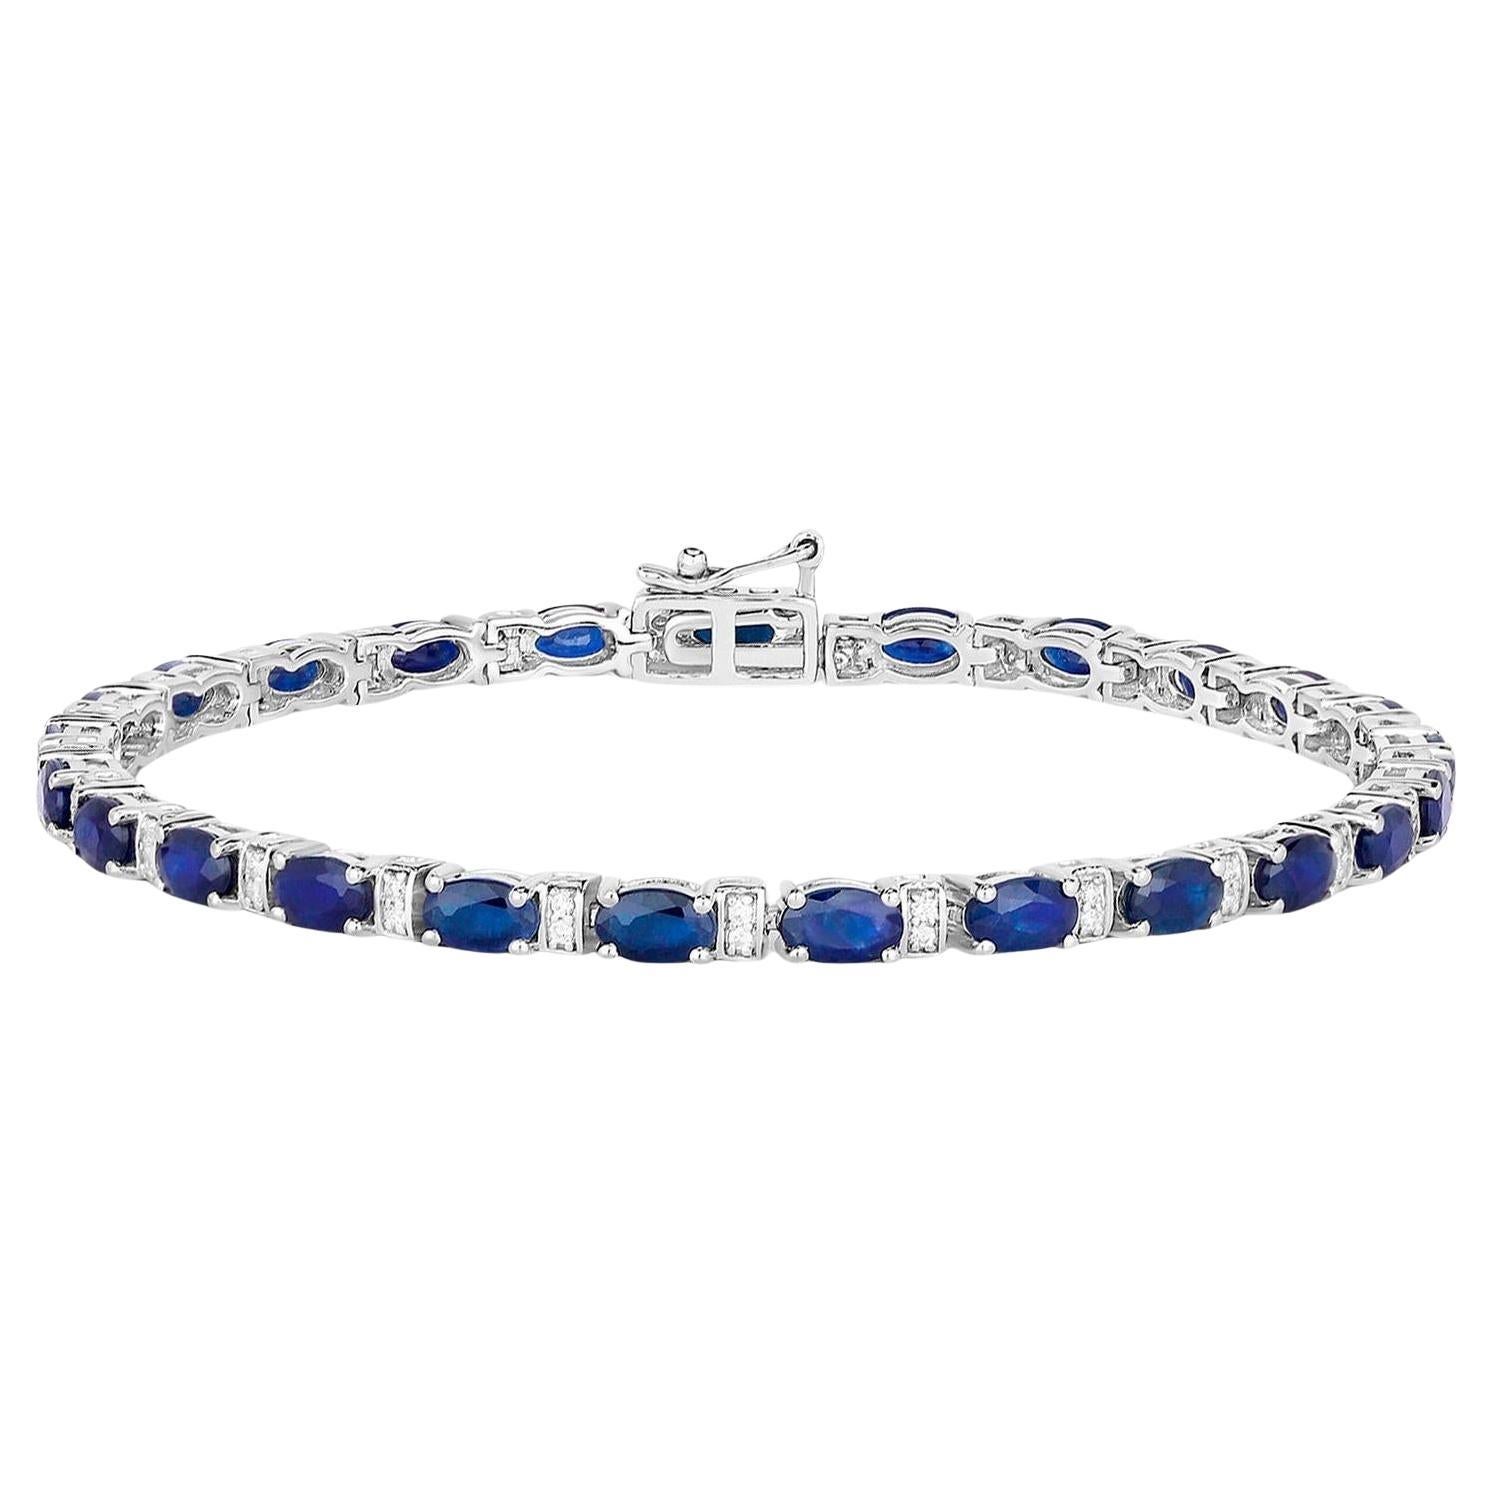 Blaues Armband mit Saphiren im Ovalschliff und Diamanten in Gliedern 5,75 Karat 14K Weißgold